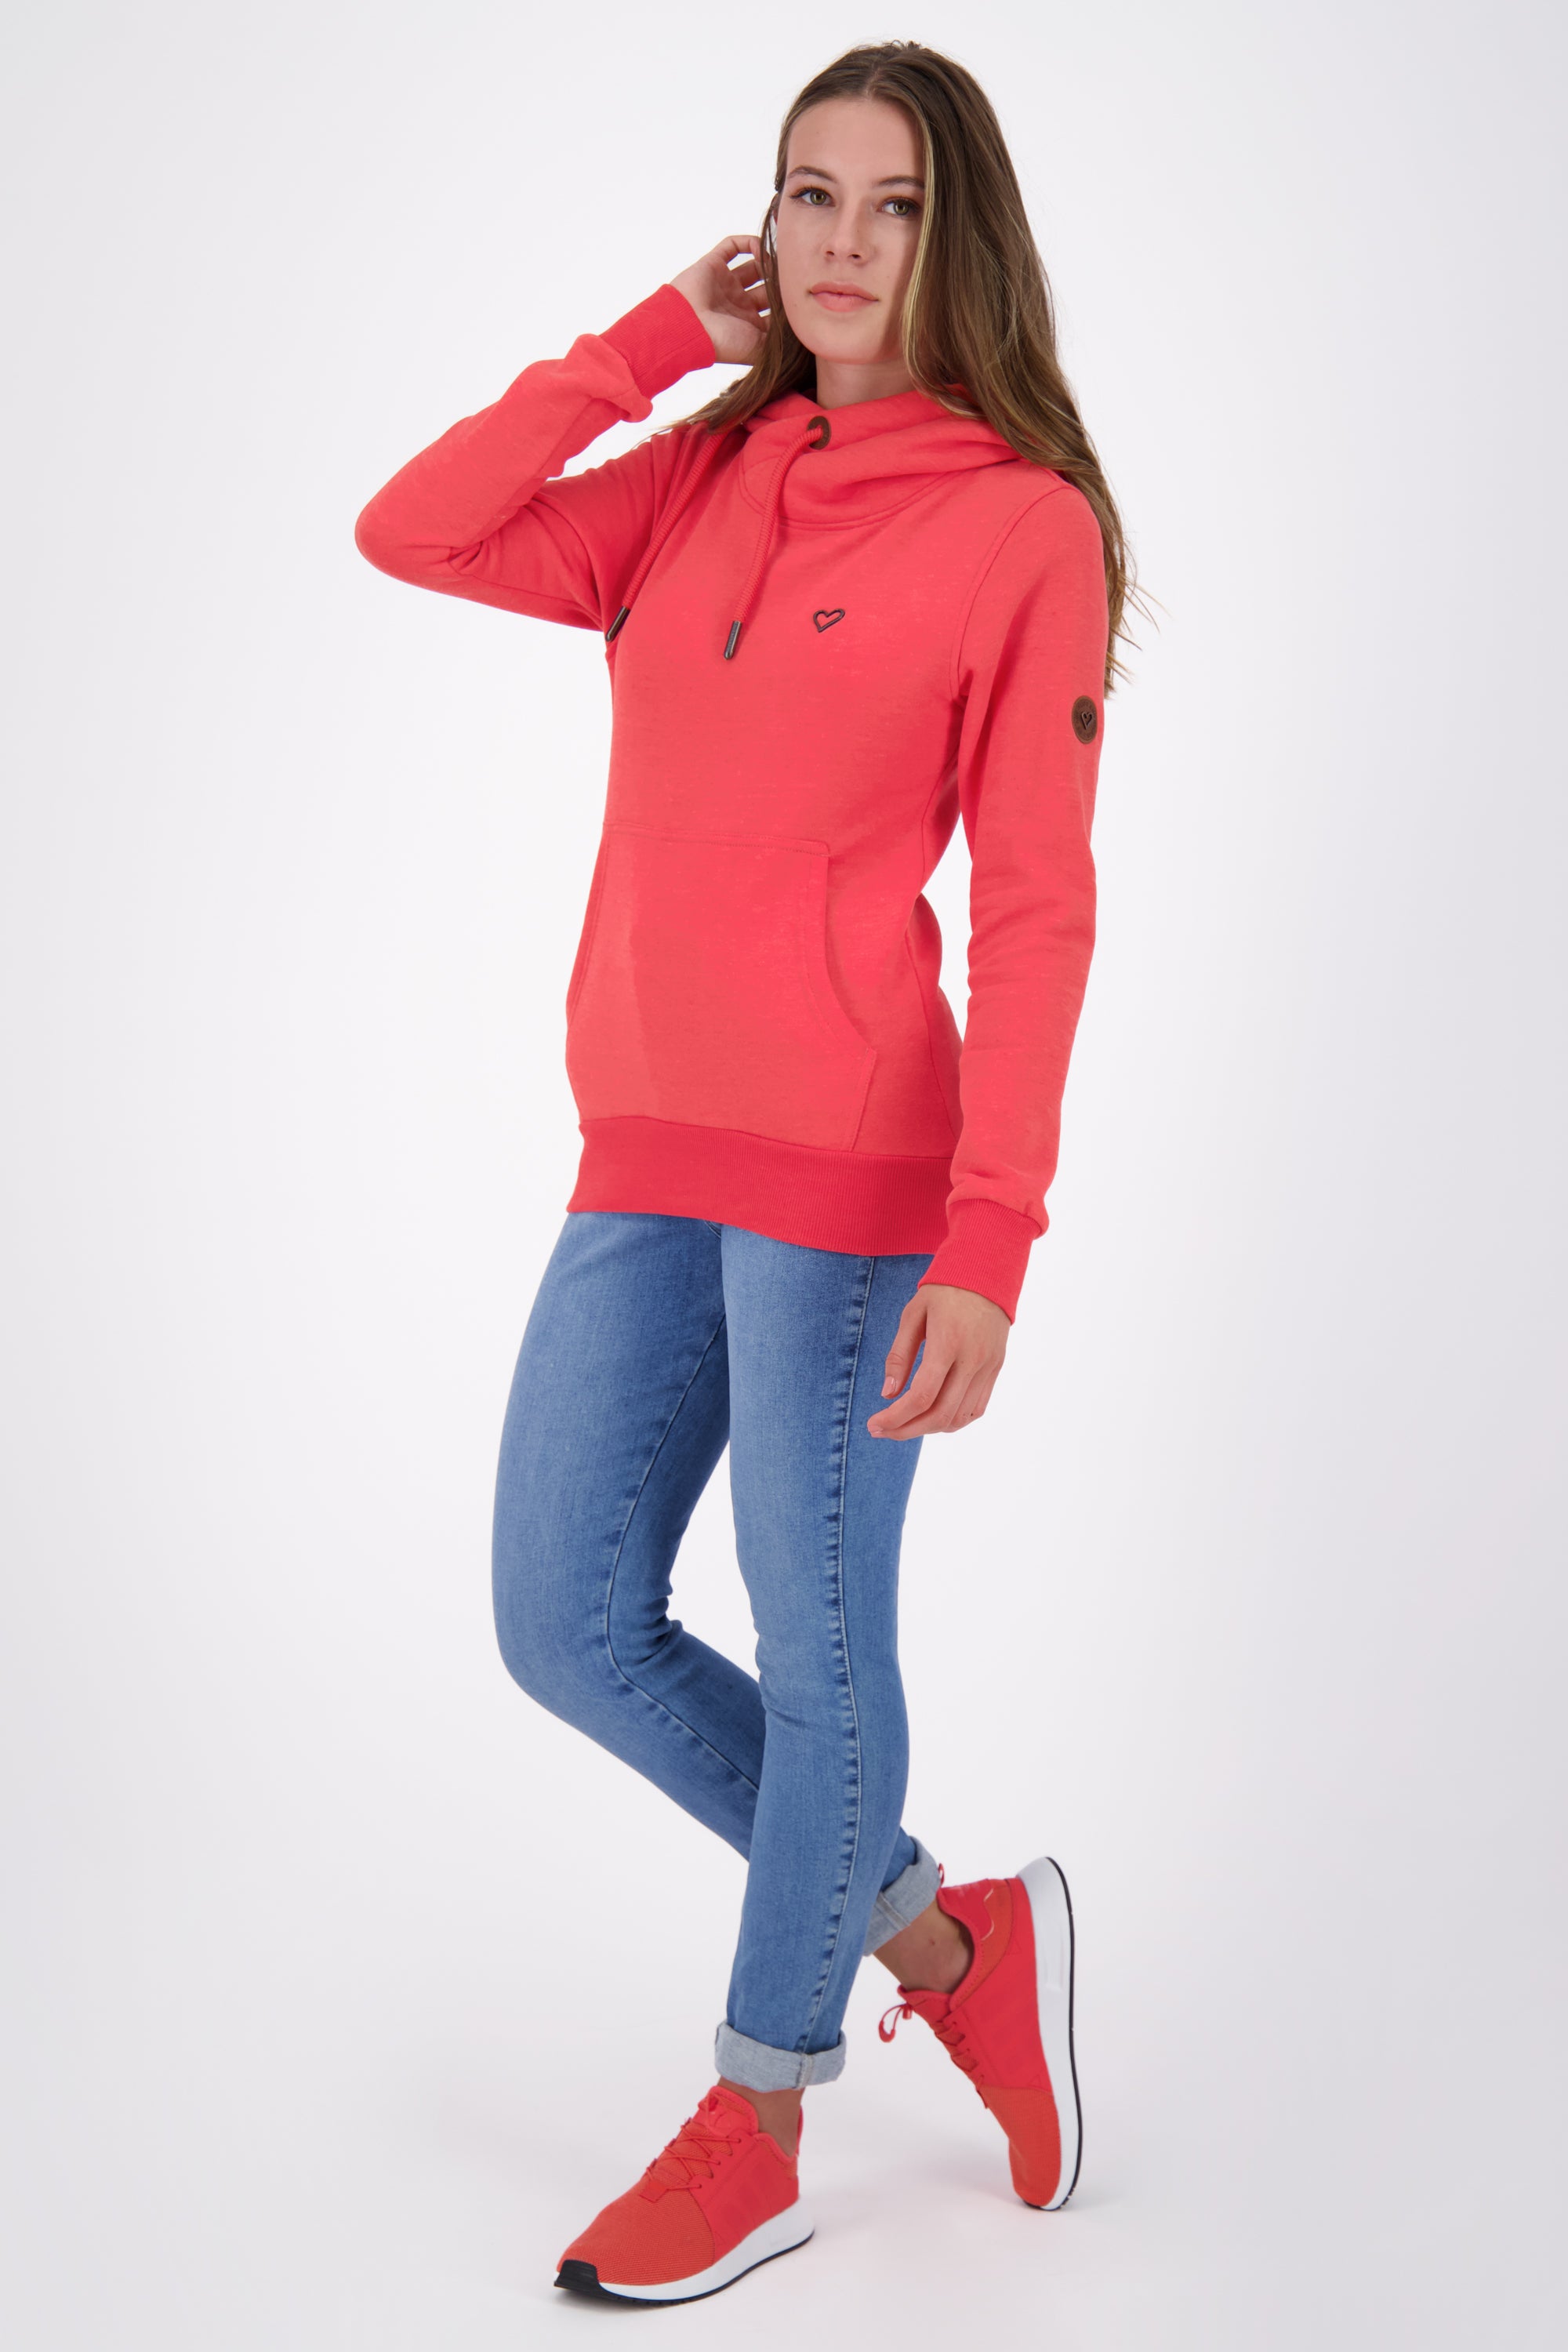 Damen Kapuzensweatshirt SarahAK A in tollen Farben Rot